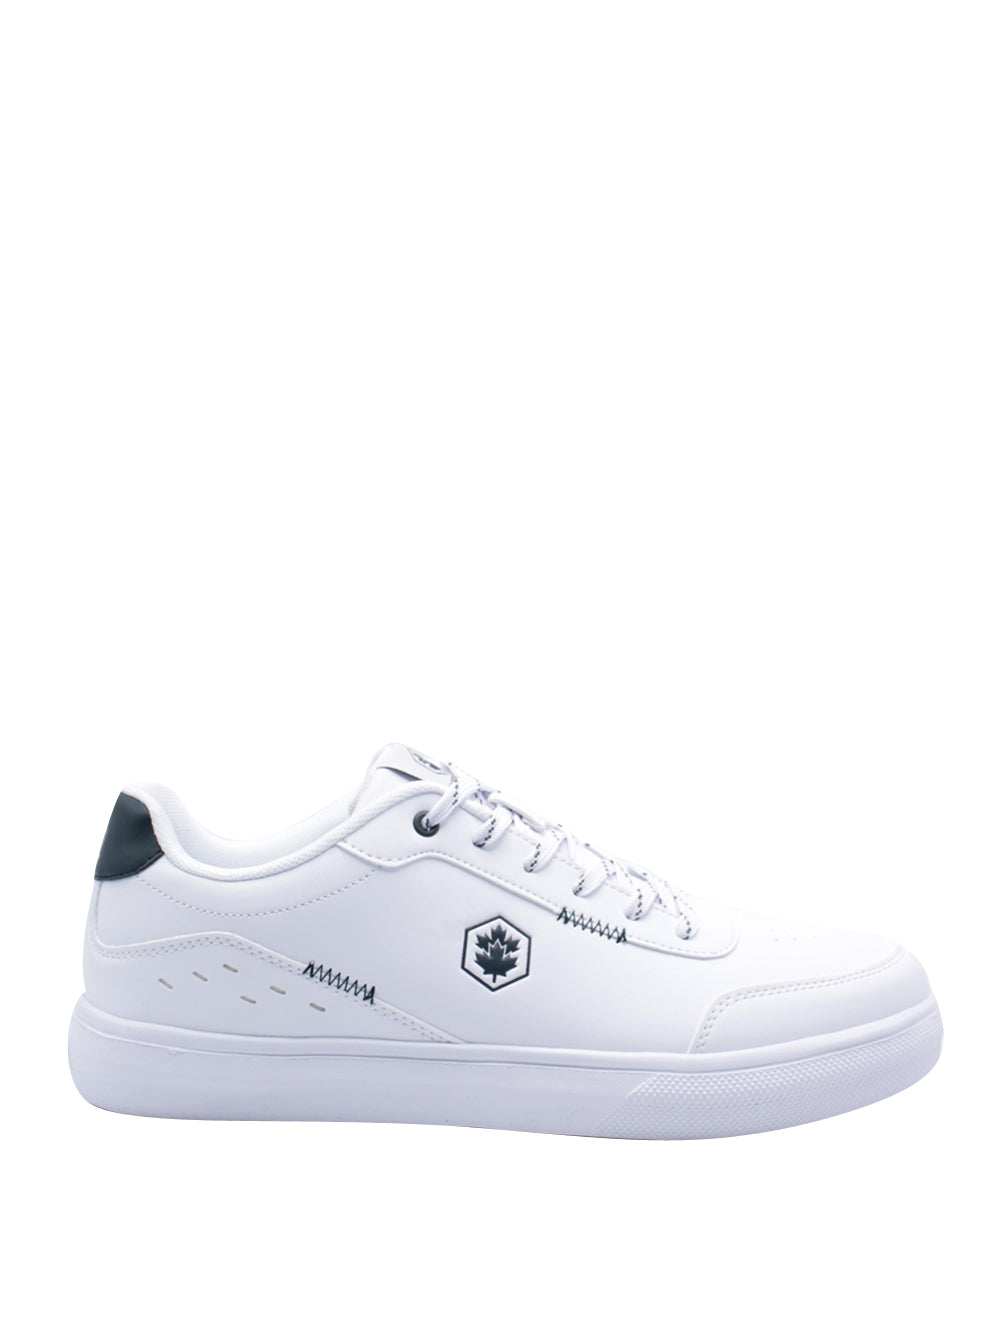 LUMBERJACK SPORT Sneakers Uomo - Bianco modello SMI1611-002